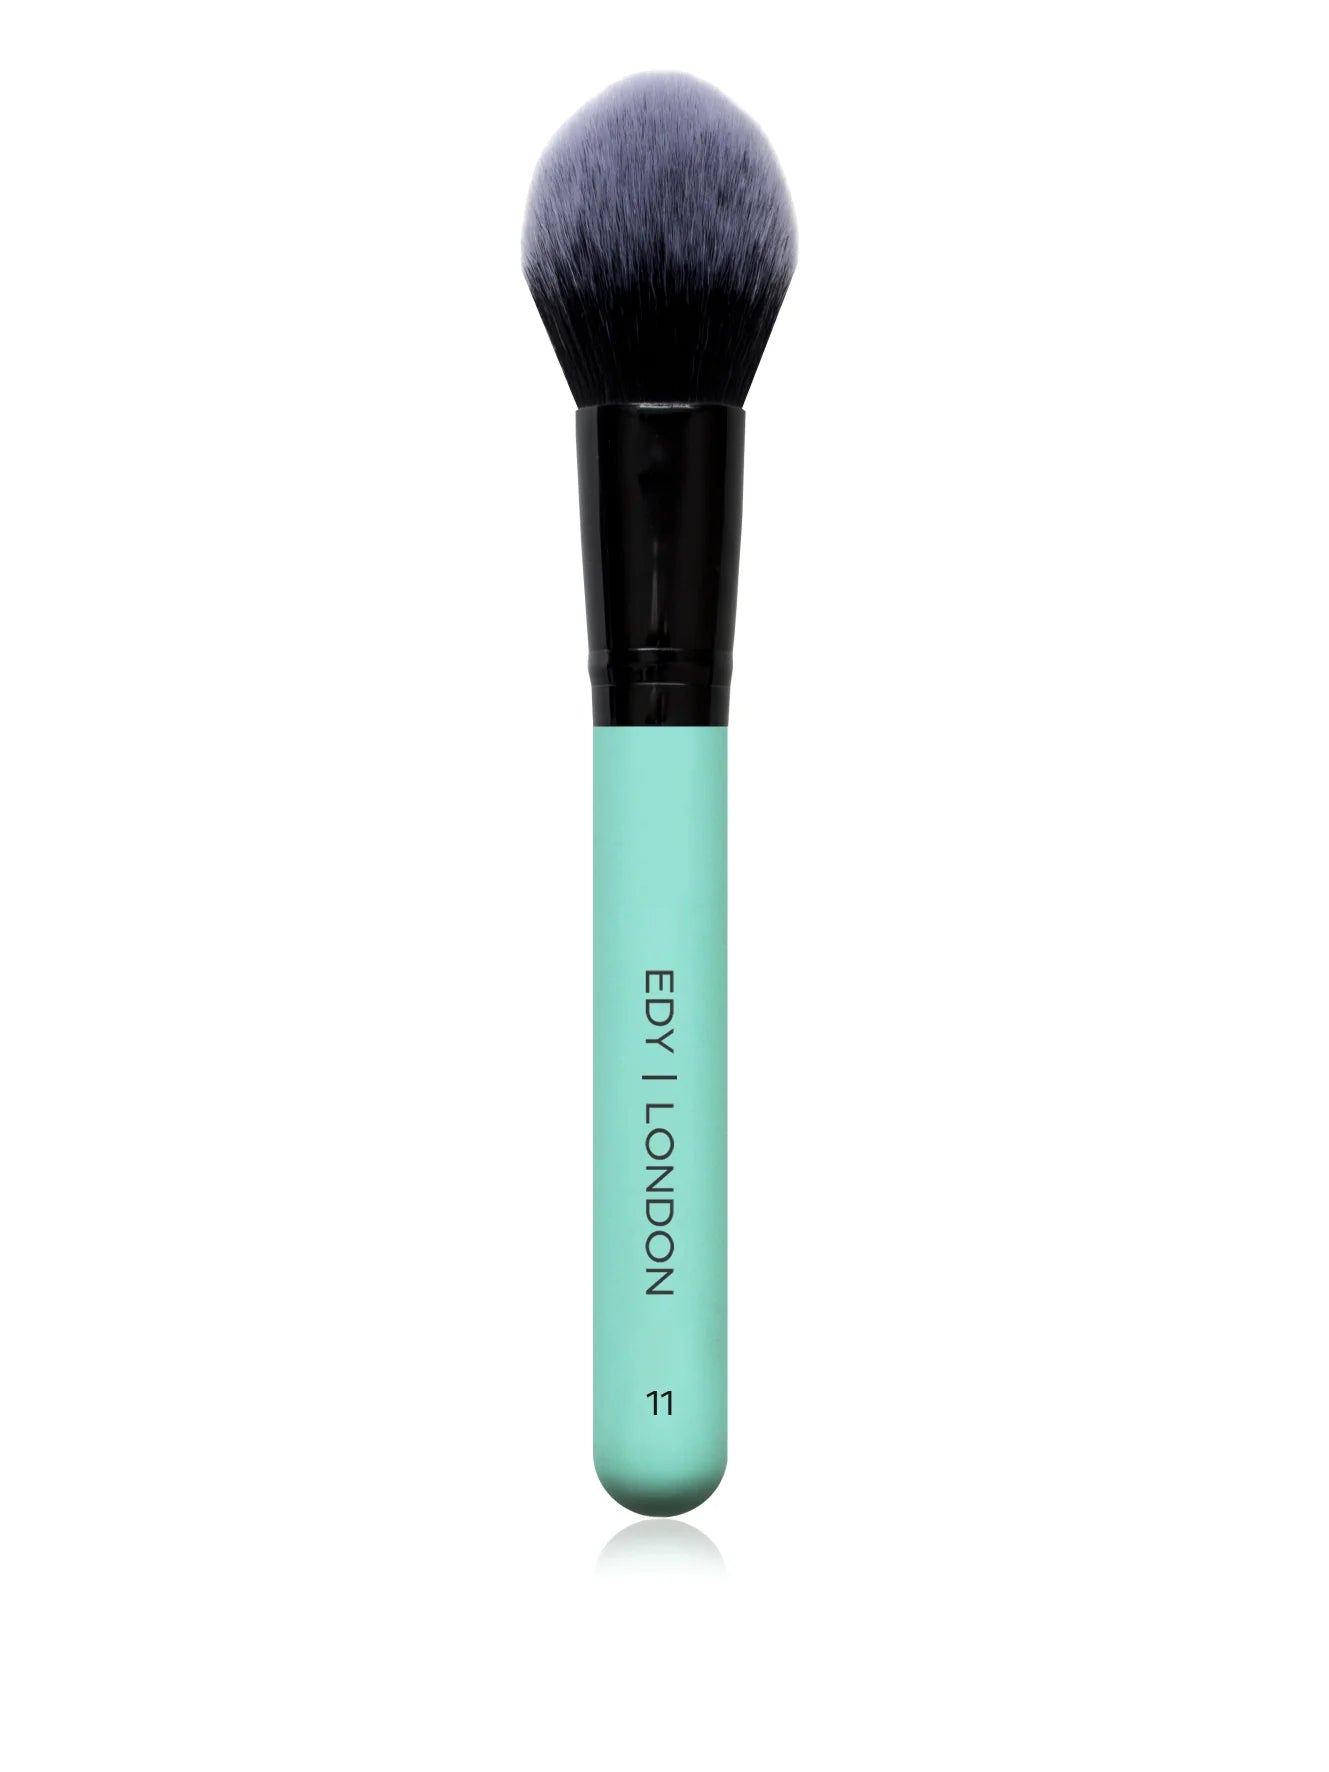 Tulip face brush 11 Make-up Brush EDY LONDON Turquoise   - EDY LONDON PRODUCTS UK - The Best Makeup Brushes - shop.edy.london